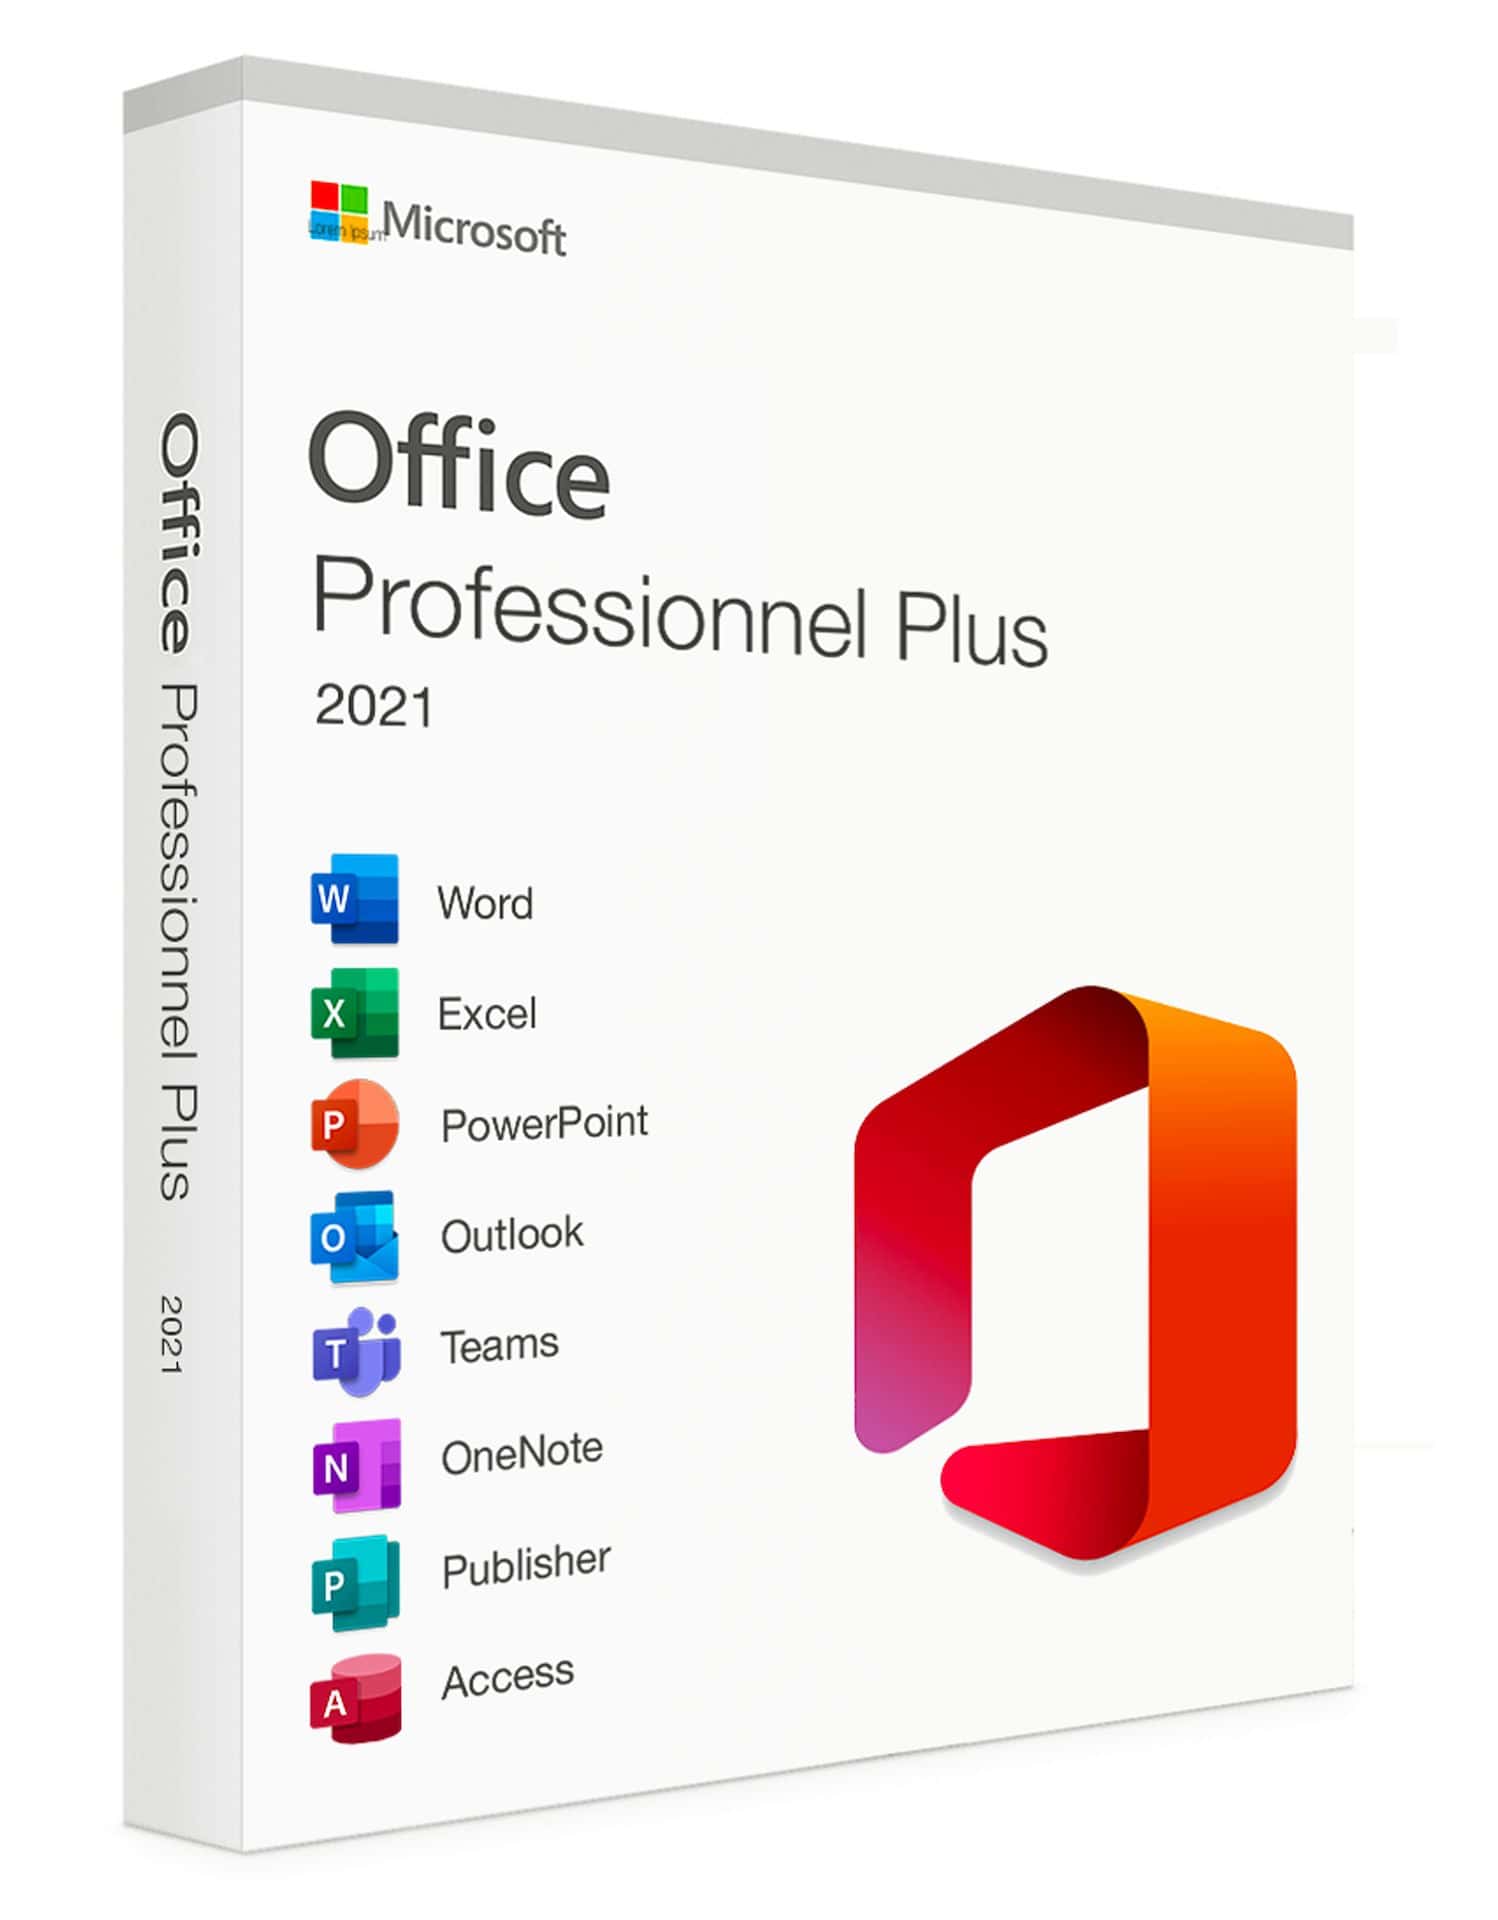 Microsoft Office 2021 Professionnel Plus (Franais, pour Windows 10 ou 11 uniquement) Licence numrique 1 utilisateur pour 1 PC  tlcharger, informatique Reunion 974, Futur Runion informatique